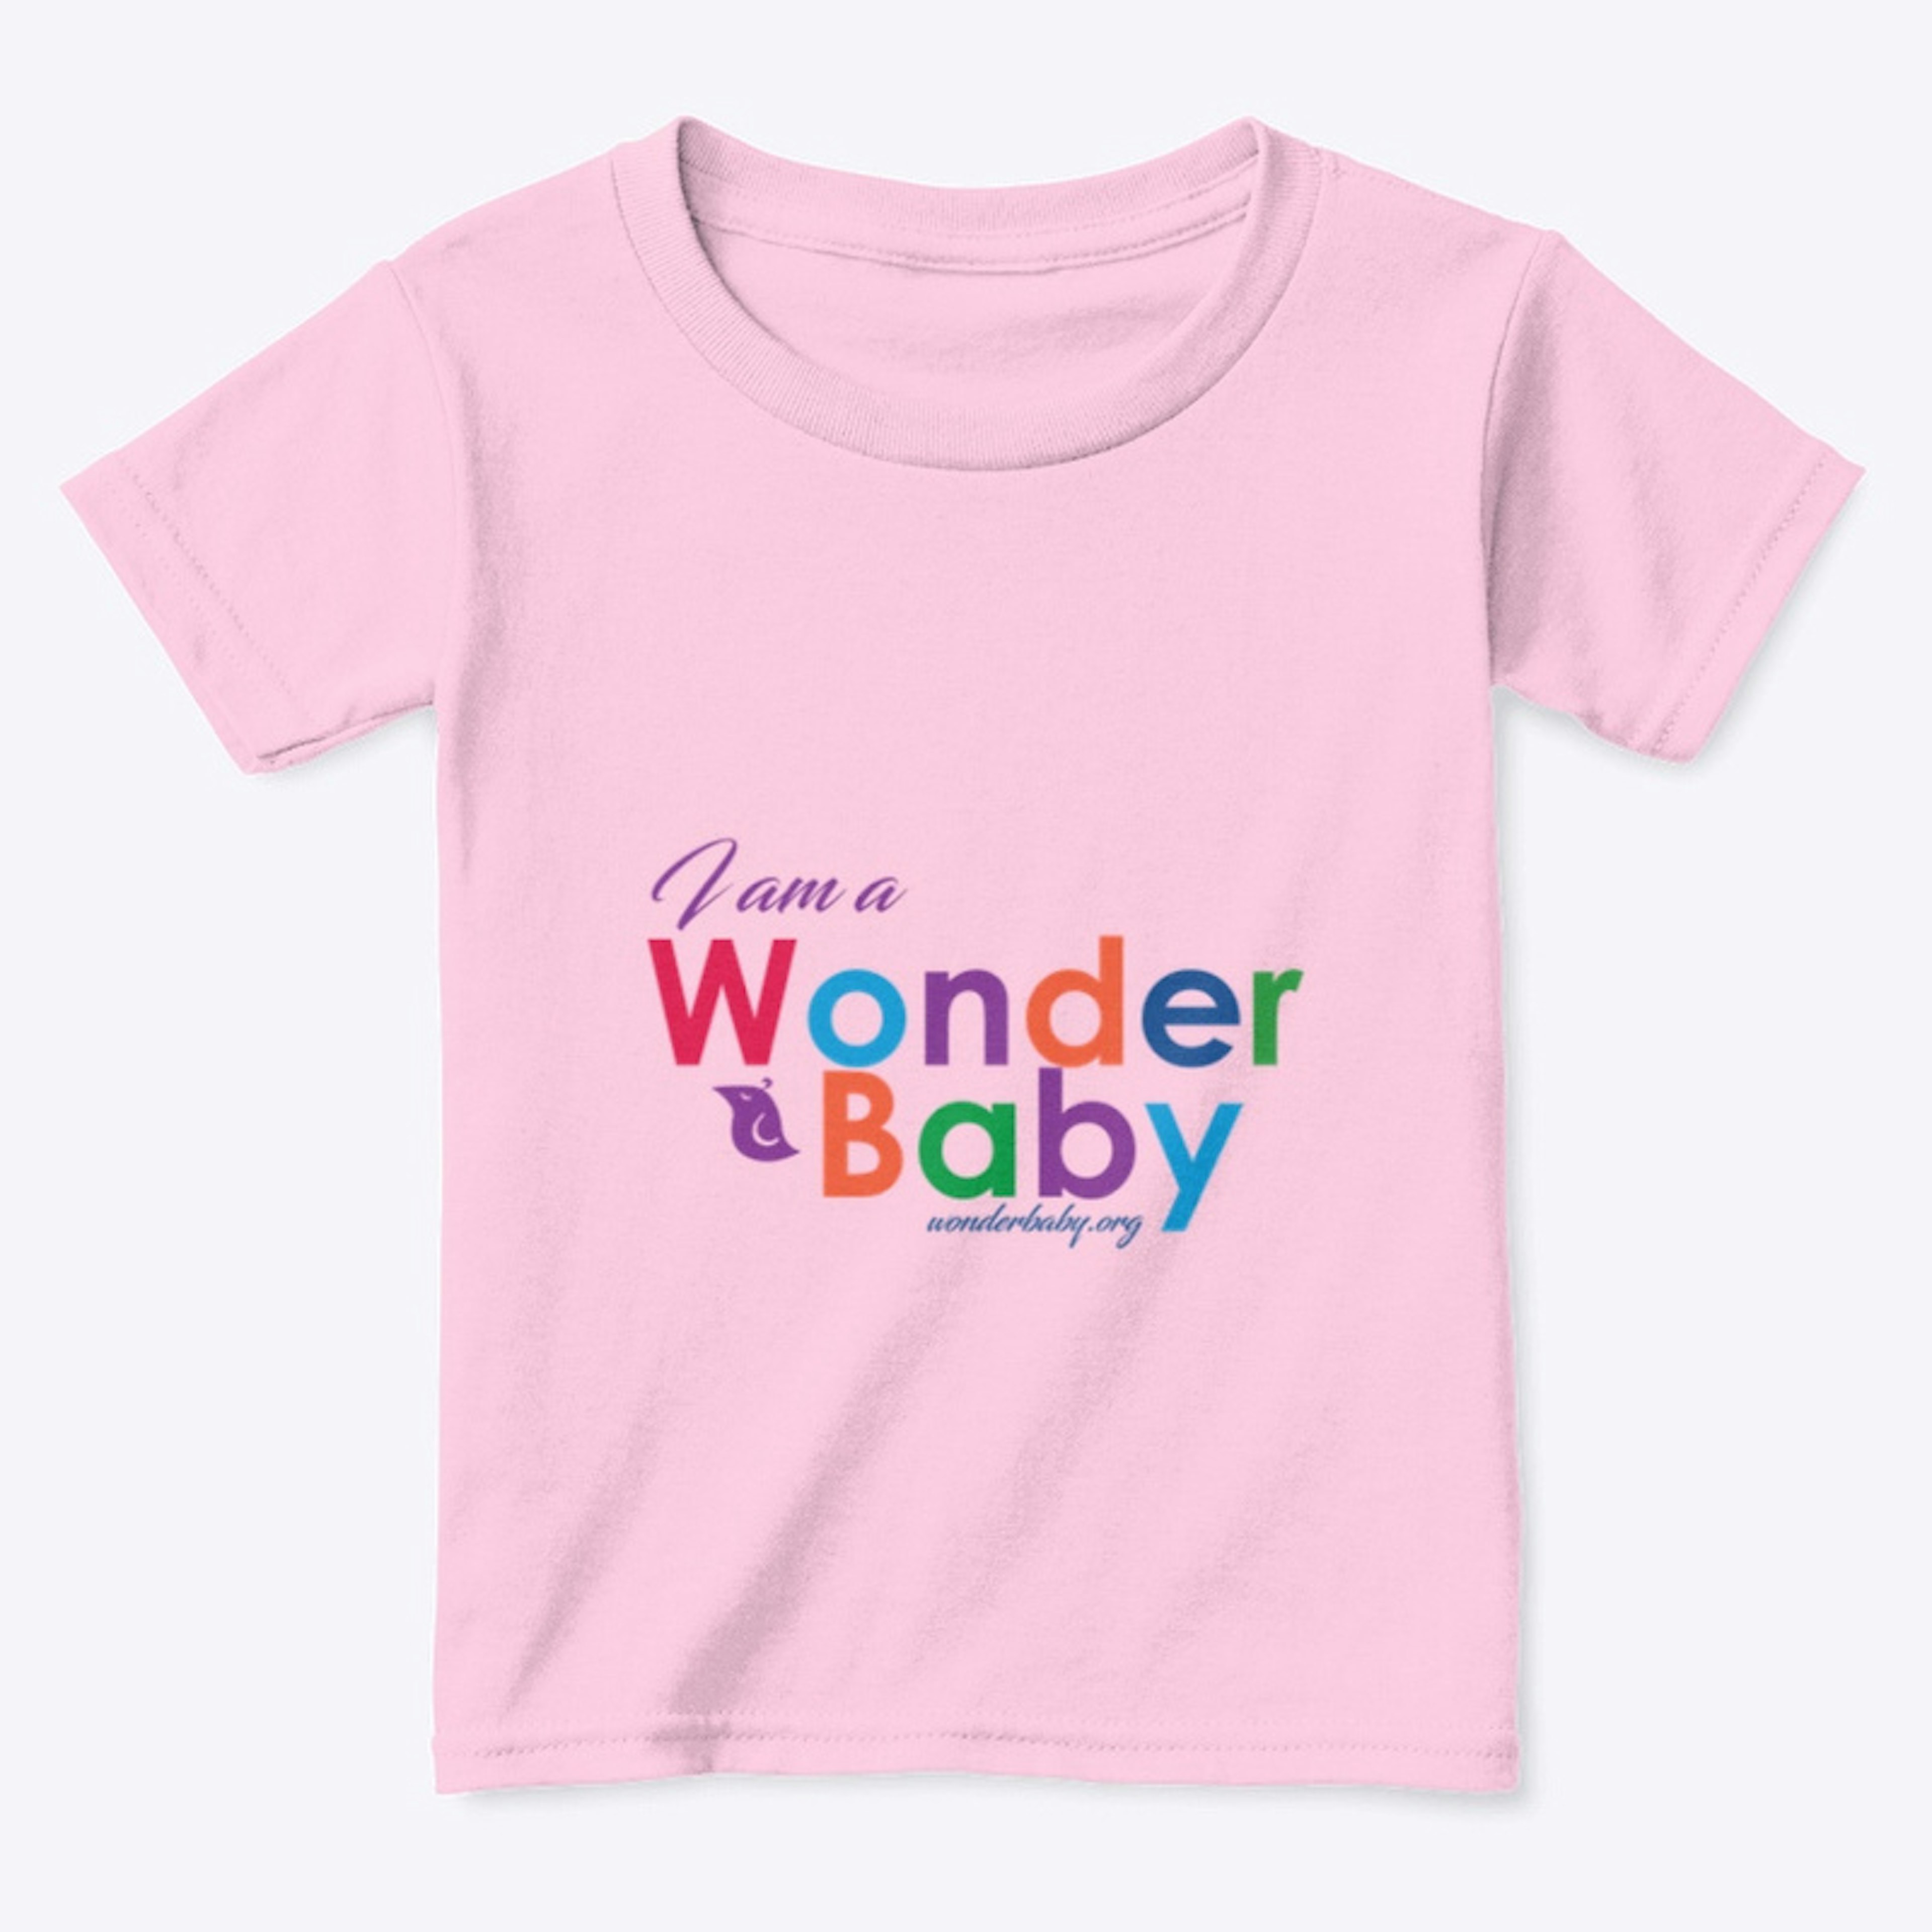 I am a WonderBaby T-Shirt